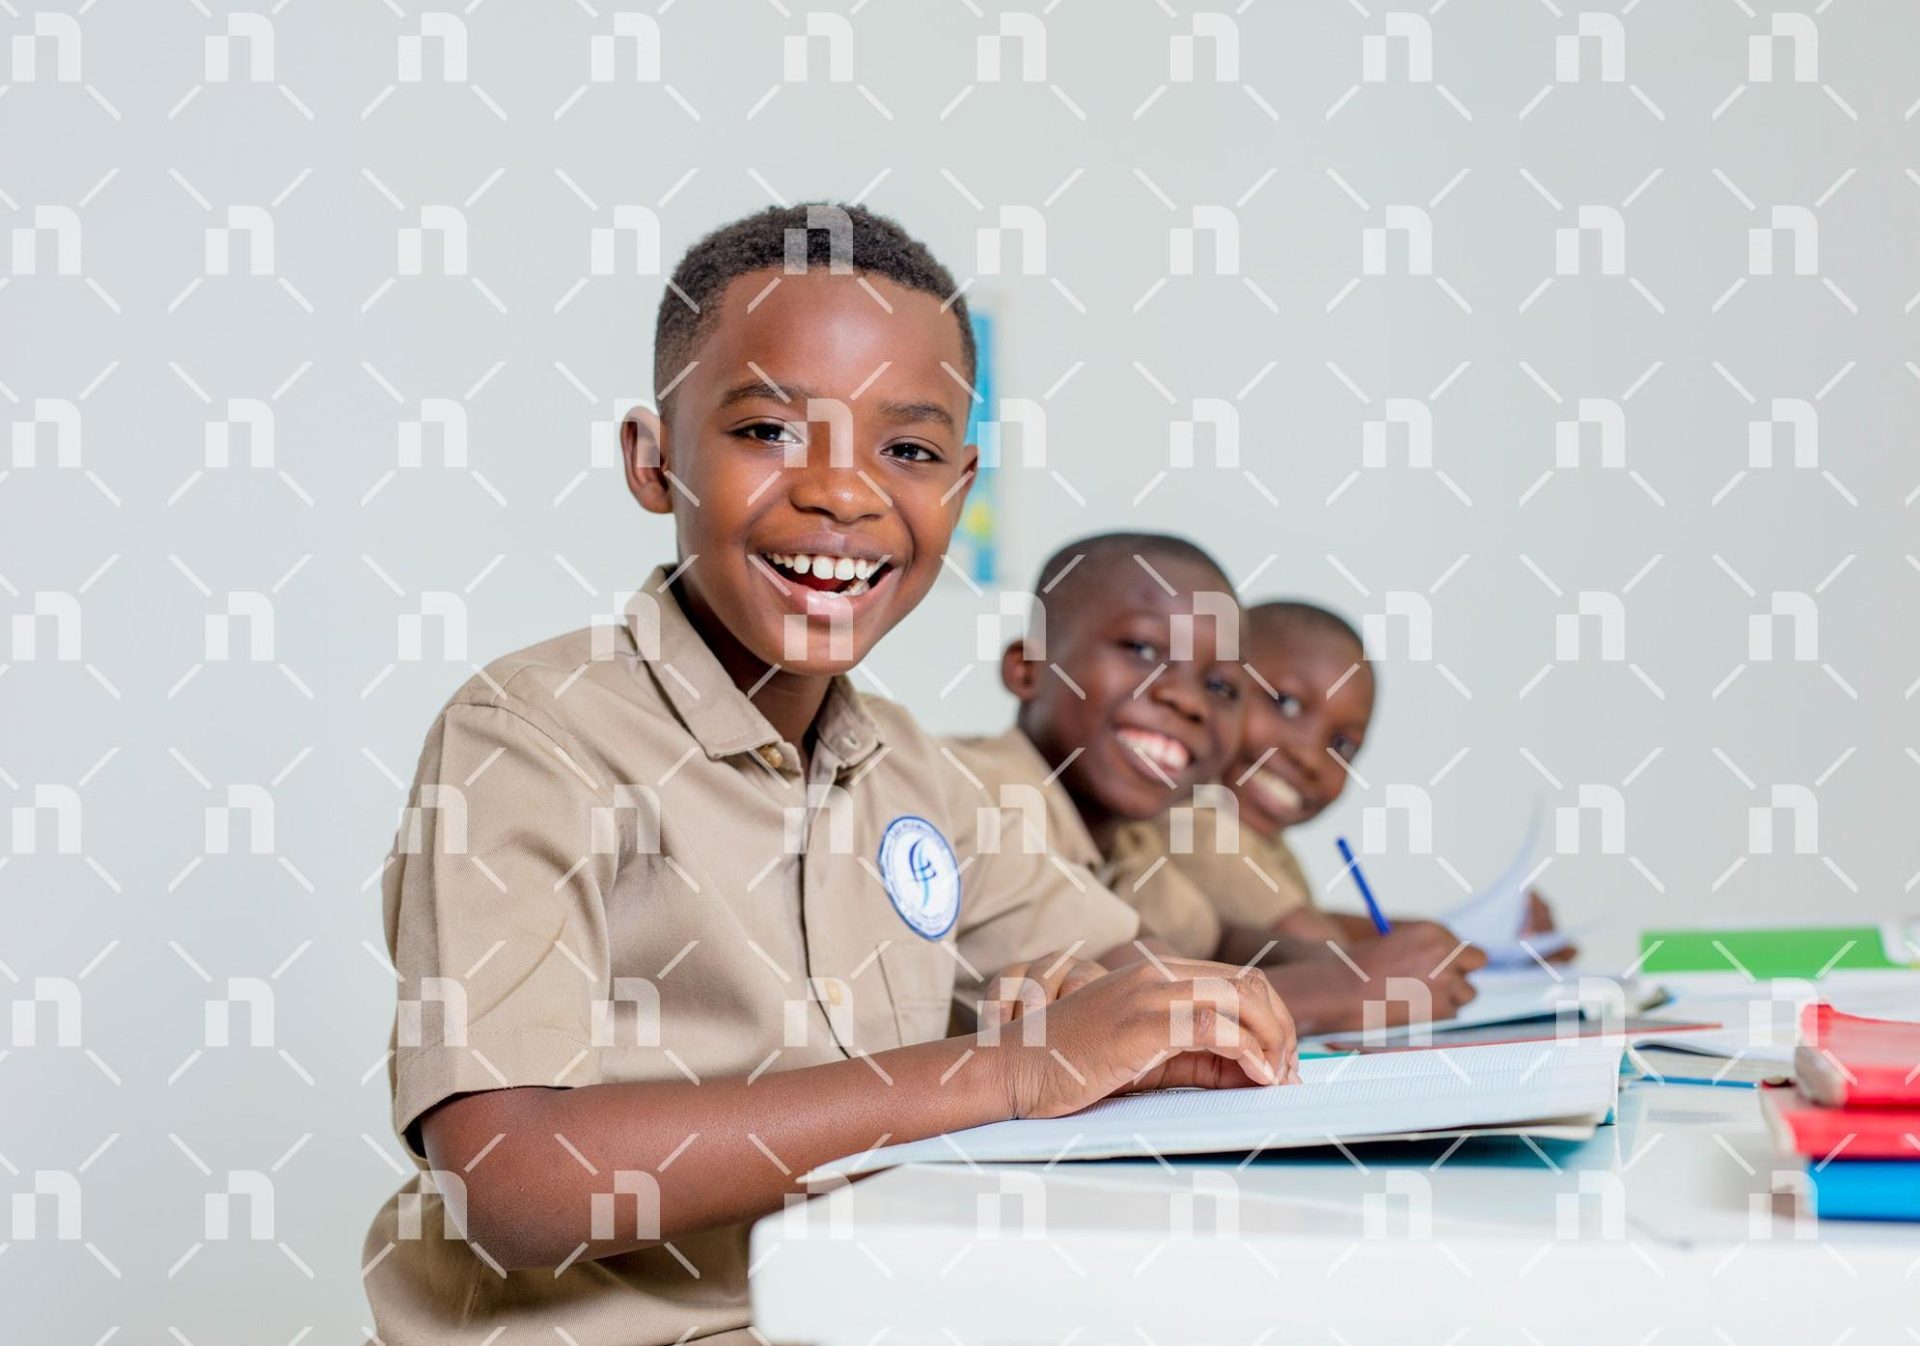 groupe-deleves-du-primaire-en-tenue-scolaire-kaki-assis-dans-une-salle-de-classe-et-affichant-tous-un-sourire